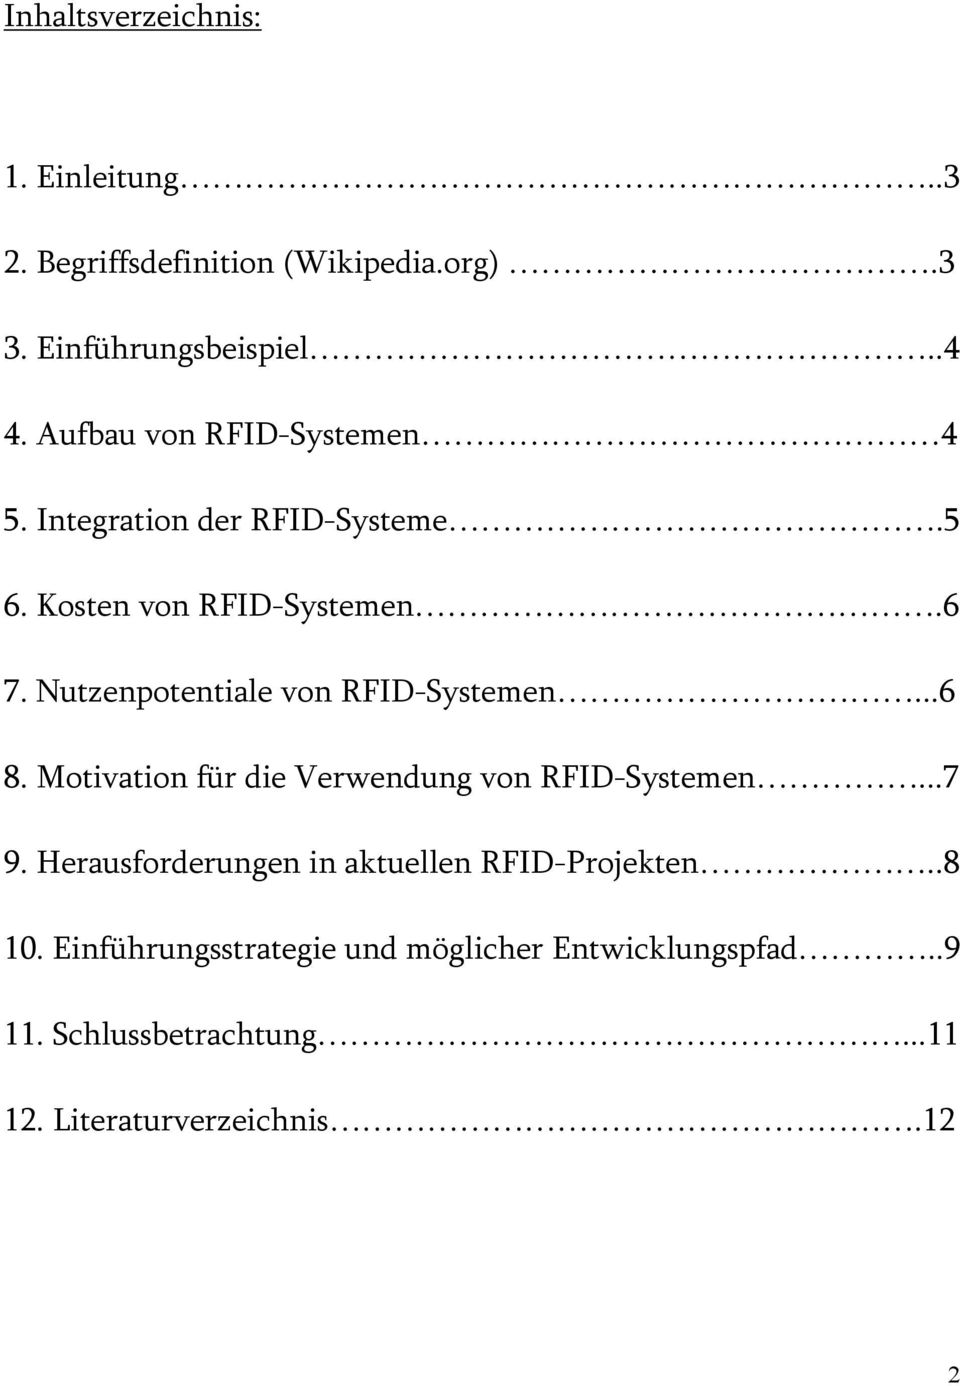 Nutzenpotentiale von RFID-Systemen...6 8. Motivation für die Verwendung von RFID-Systemen...7 9.